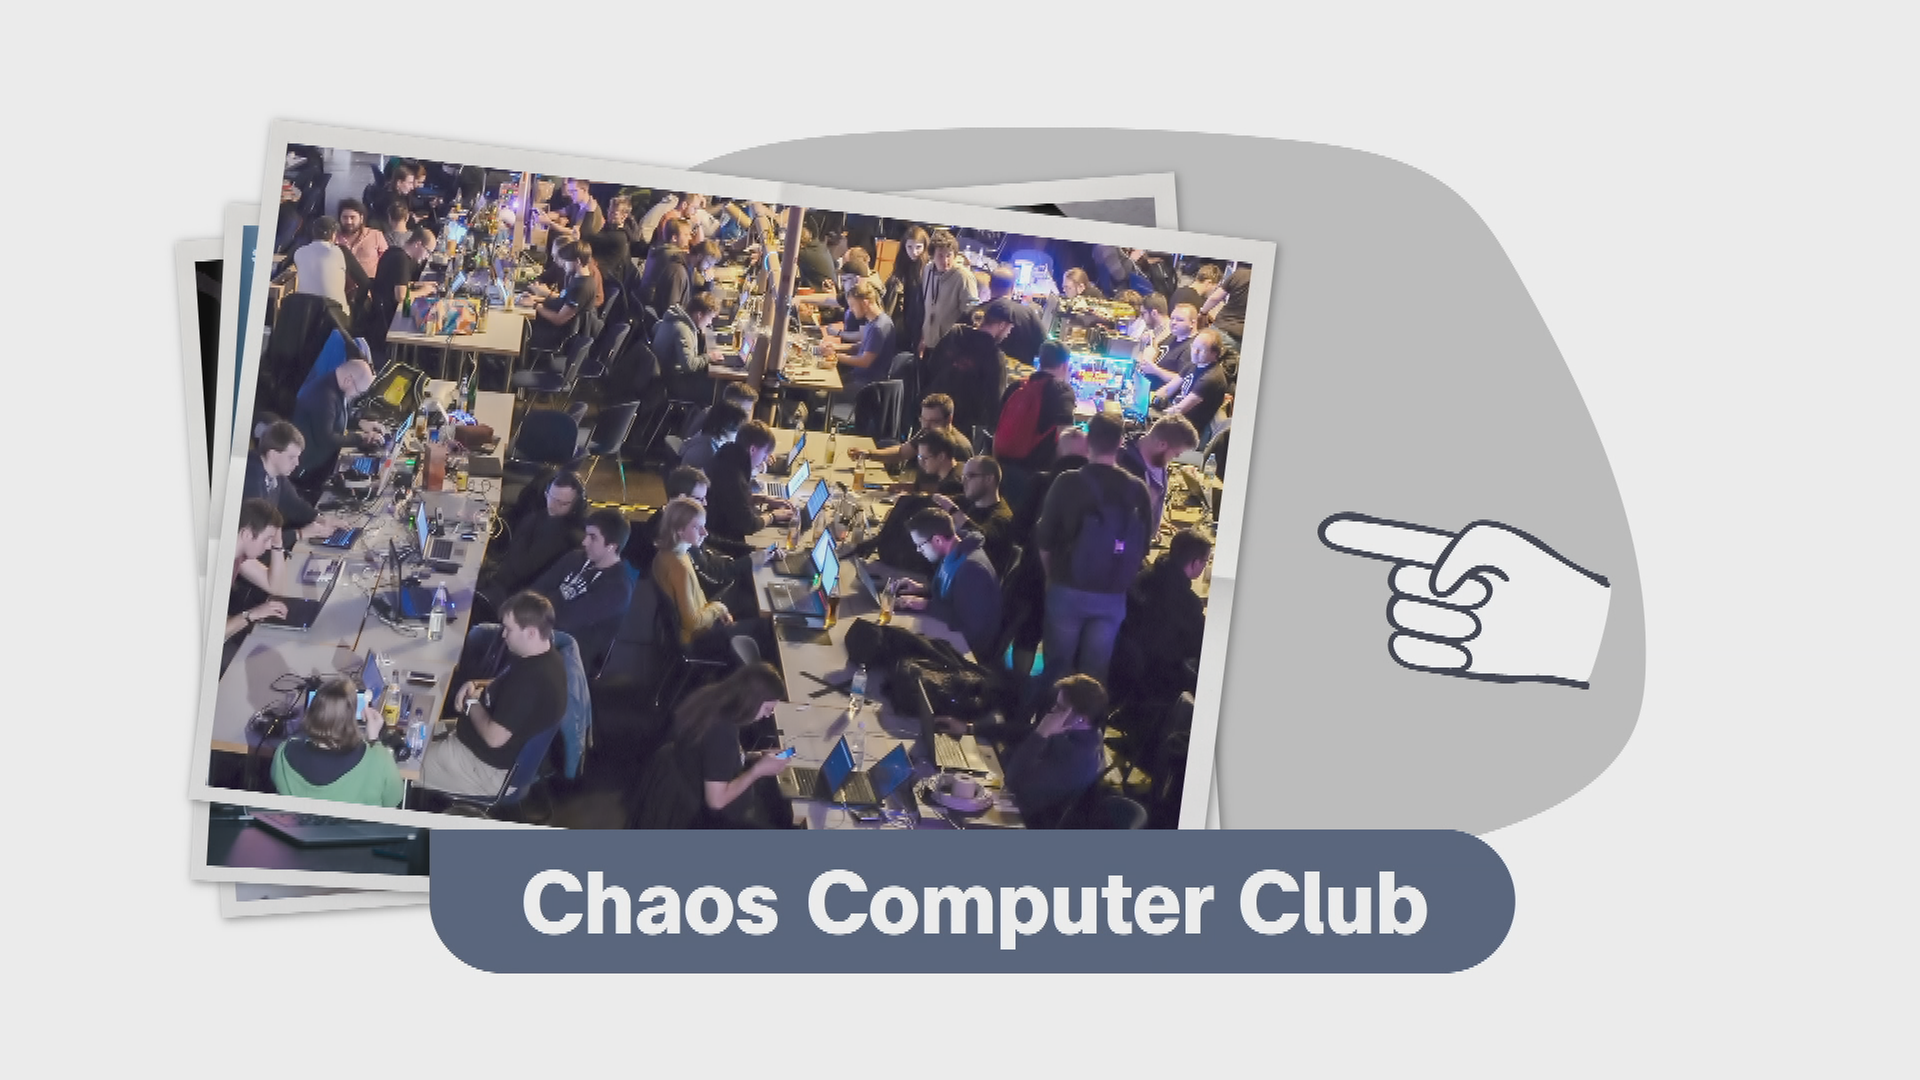 Viele Menschen sitzen am Computer in einem großen Raum, darunter steht das "Chaos Computer Club"